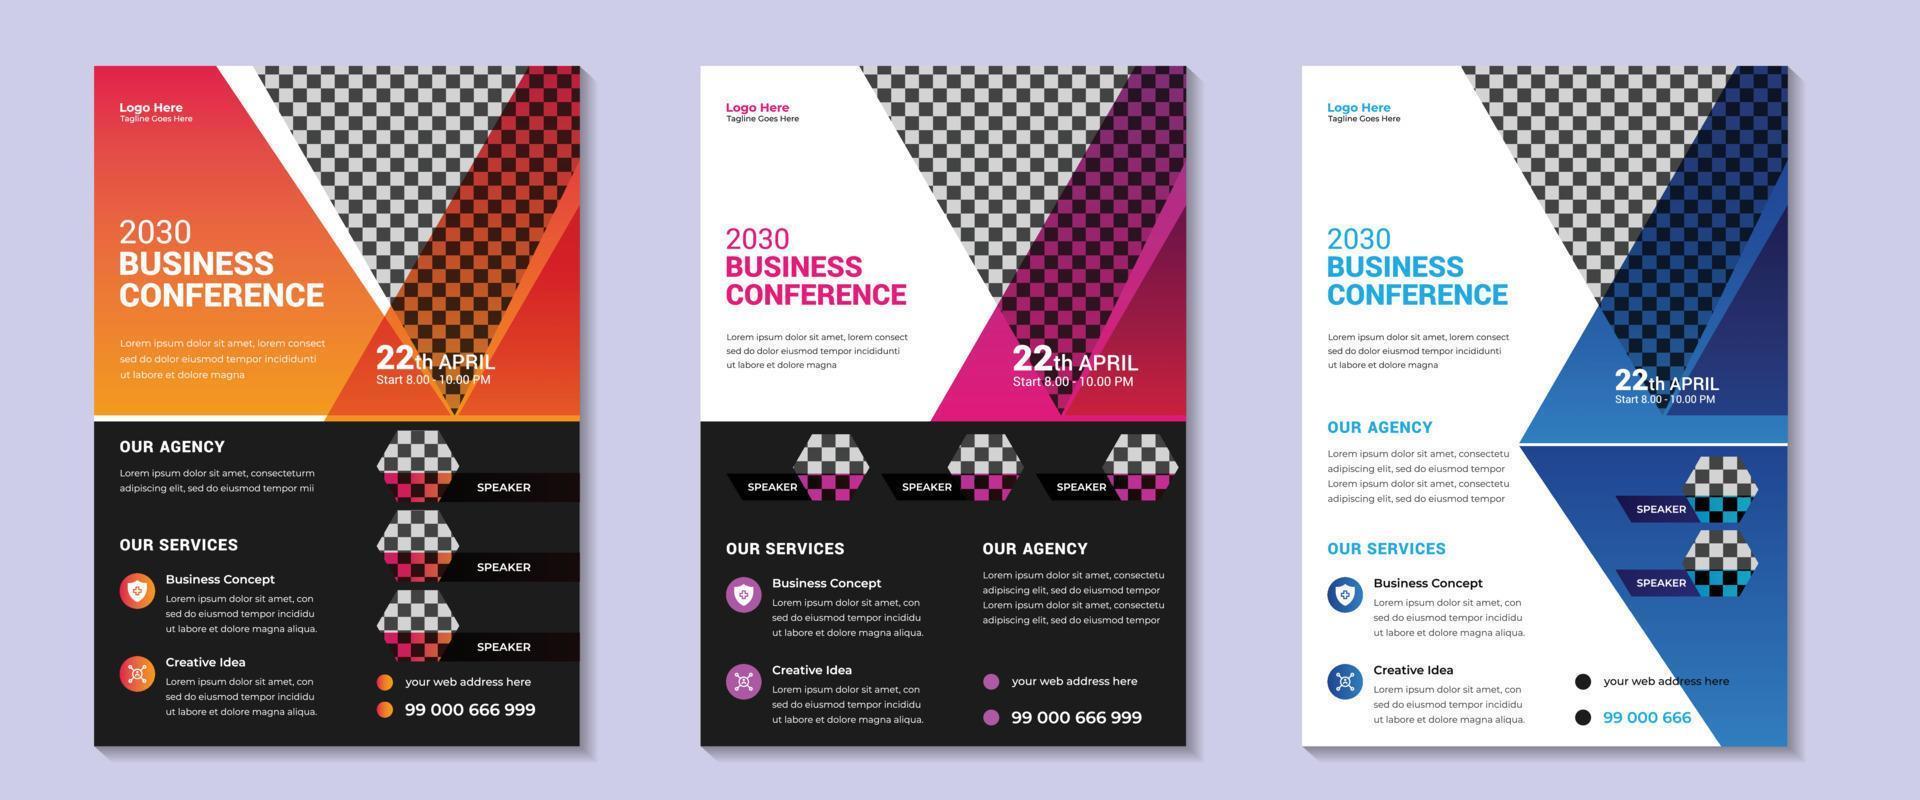 Flyer-Design für Geschäftskonferenzen. Corporate Business Conference Poster und Flyer Design-Layout-Vorlage mit schönem Hintergrund. Vektor-Illustration. vektor